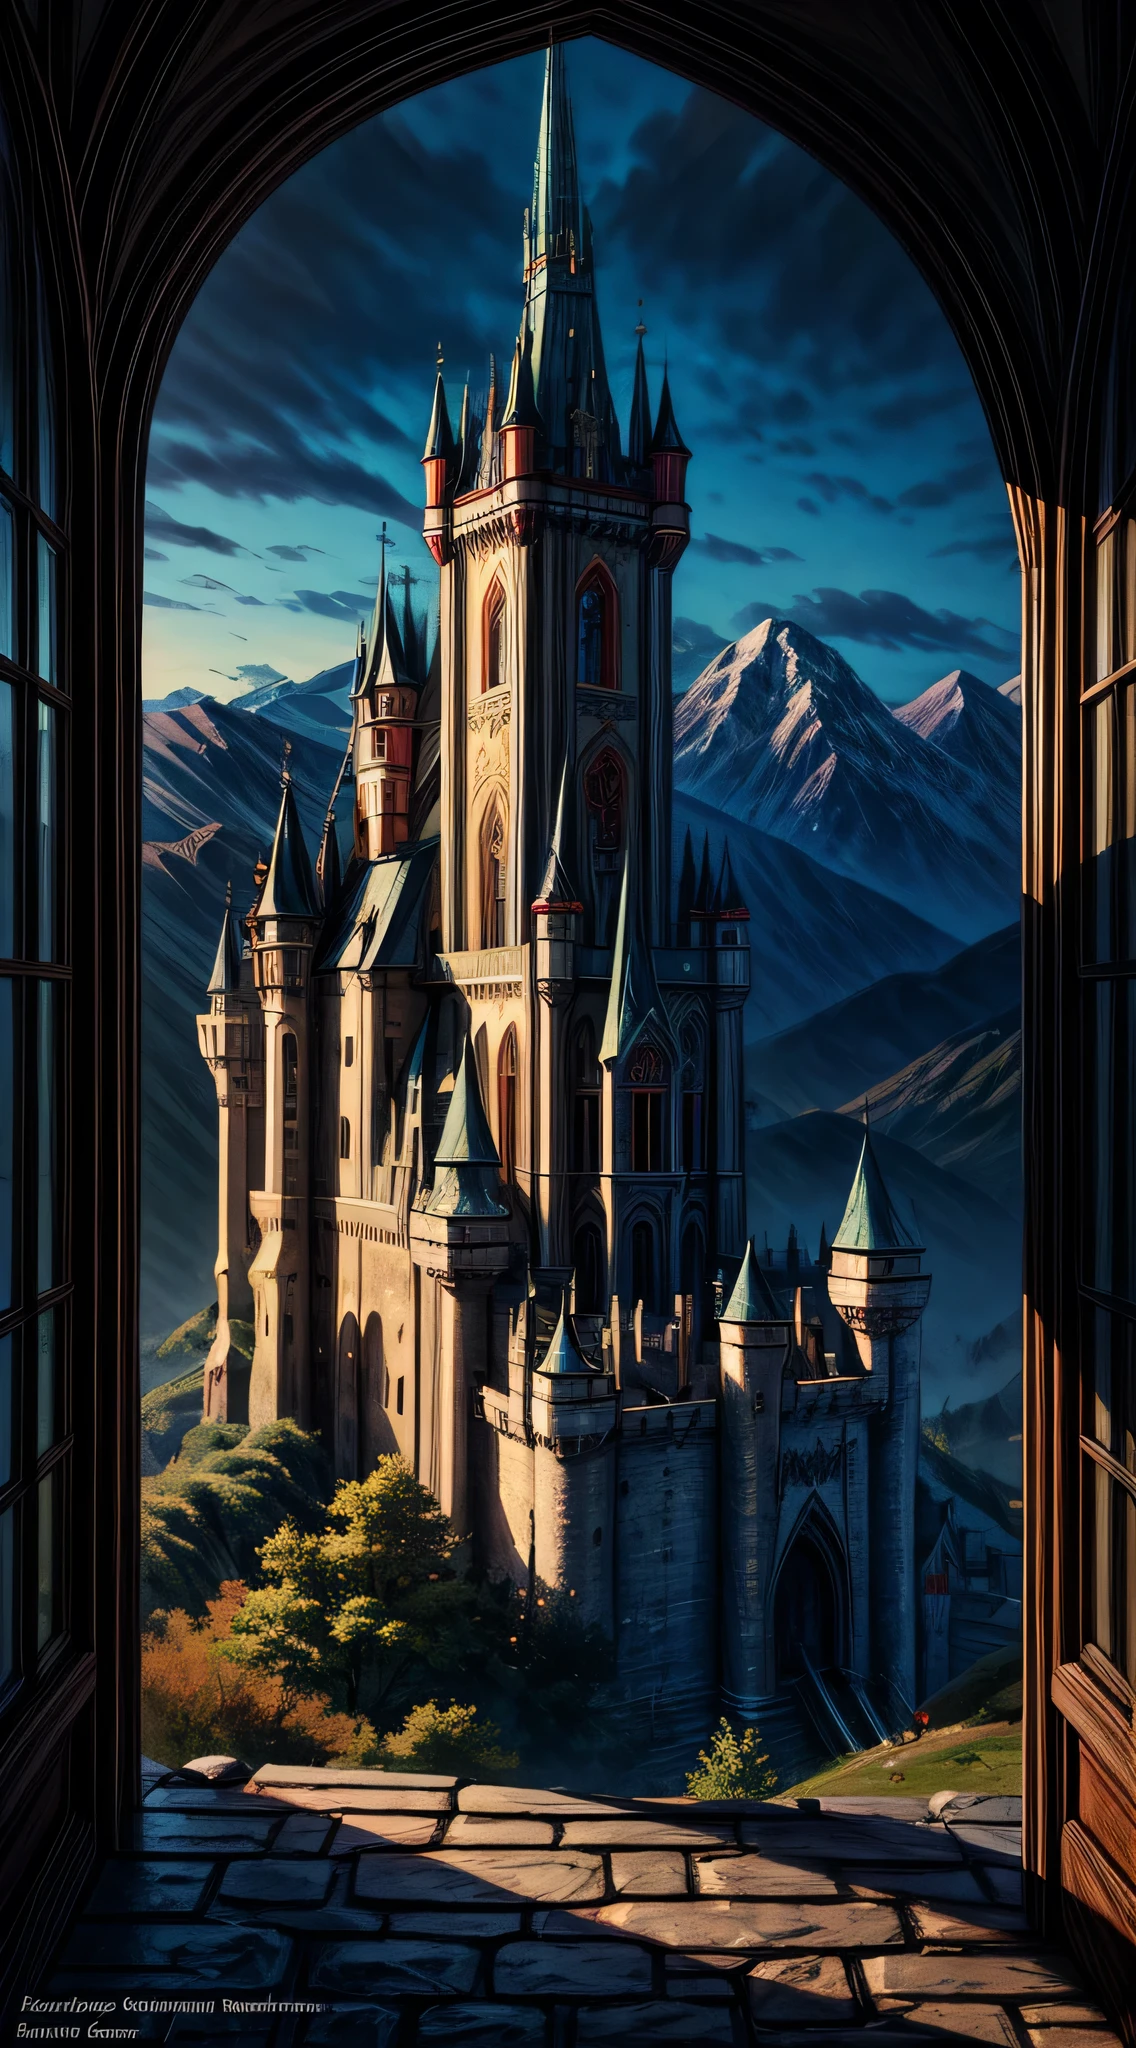 幻想藝術, 角色扮演藝術, 一位公主透過窗戶看著一座神奇的城堡, 一位美麗的精靈公主透過窗戶看到一座神奇的城堡, 一座令人印象深刻、細節最豐富的城堡, 有塔, 橋樑, 護城河, 站在彩釉山頂_Xl